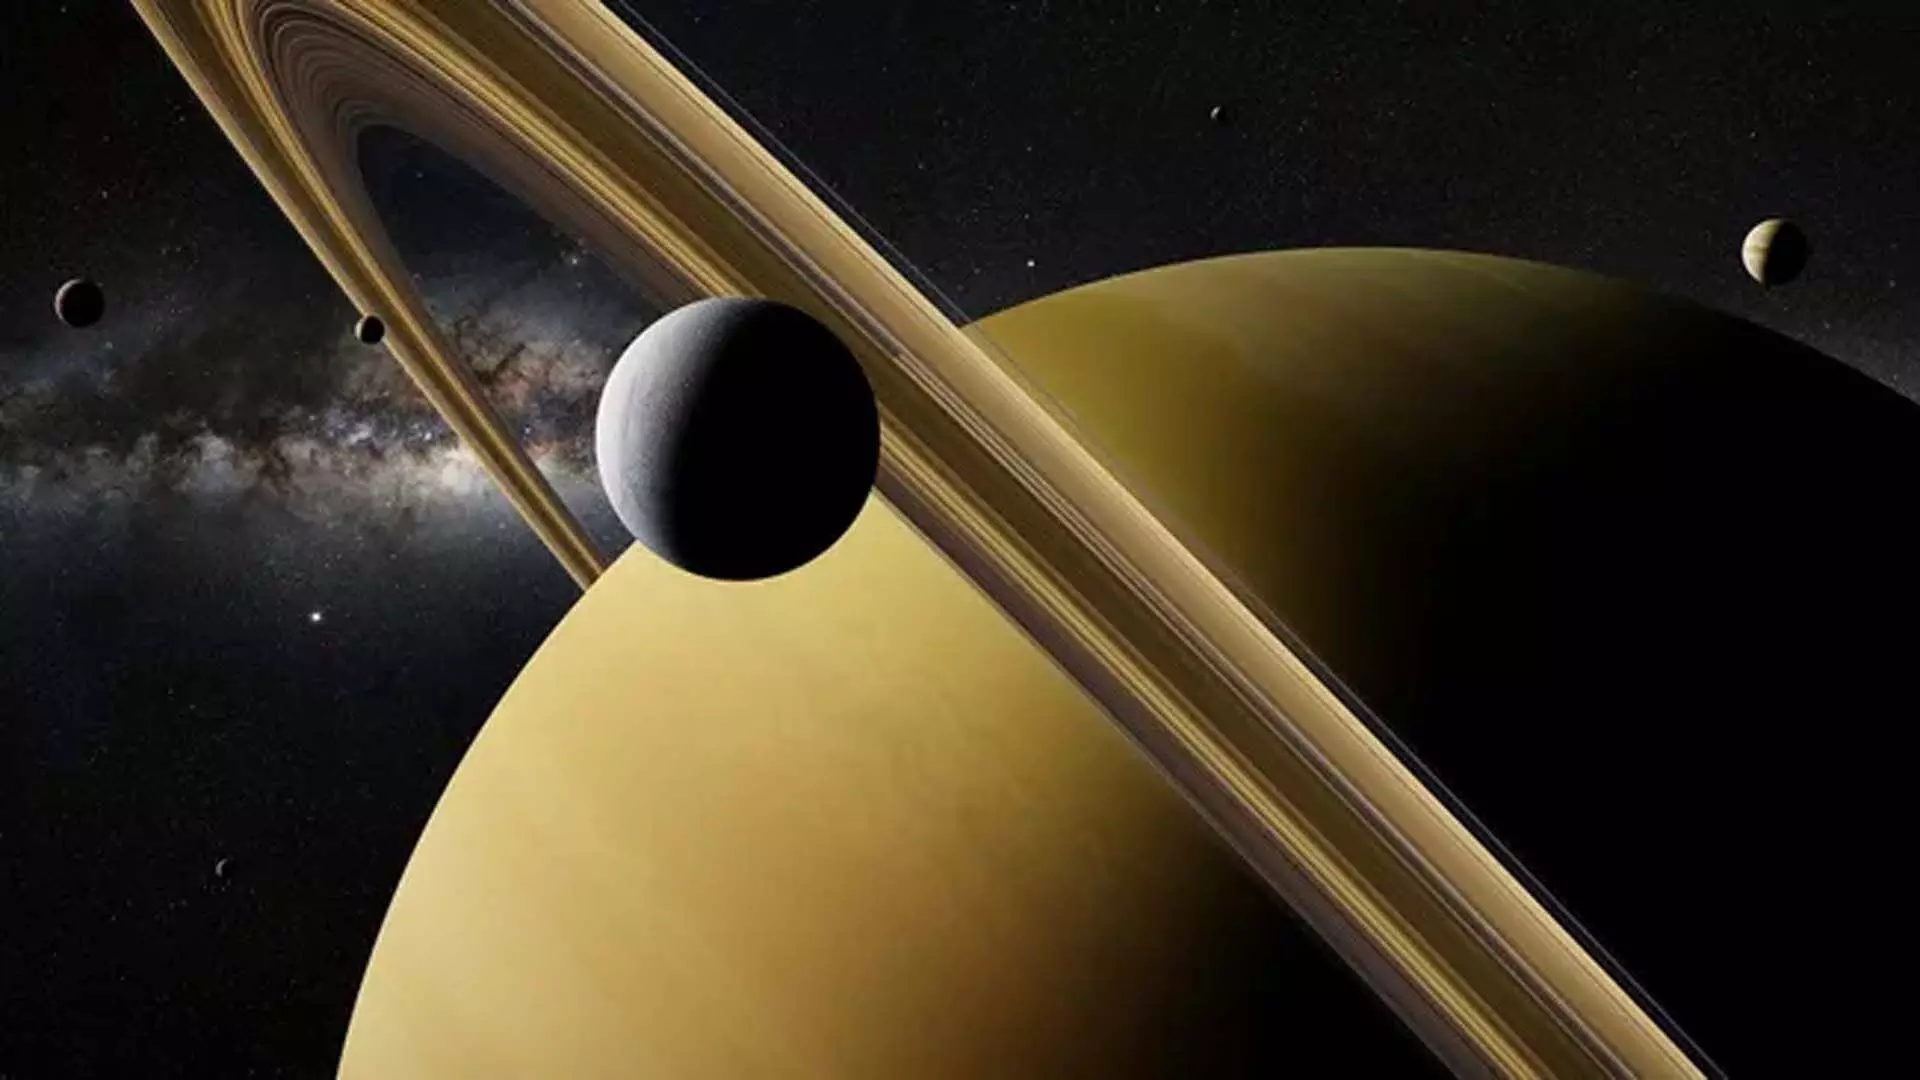 Solar system में हैं कितने चन्द्रमा?